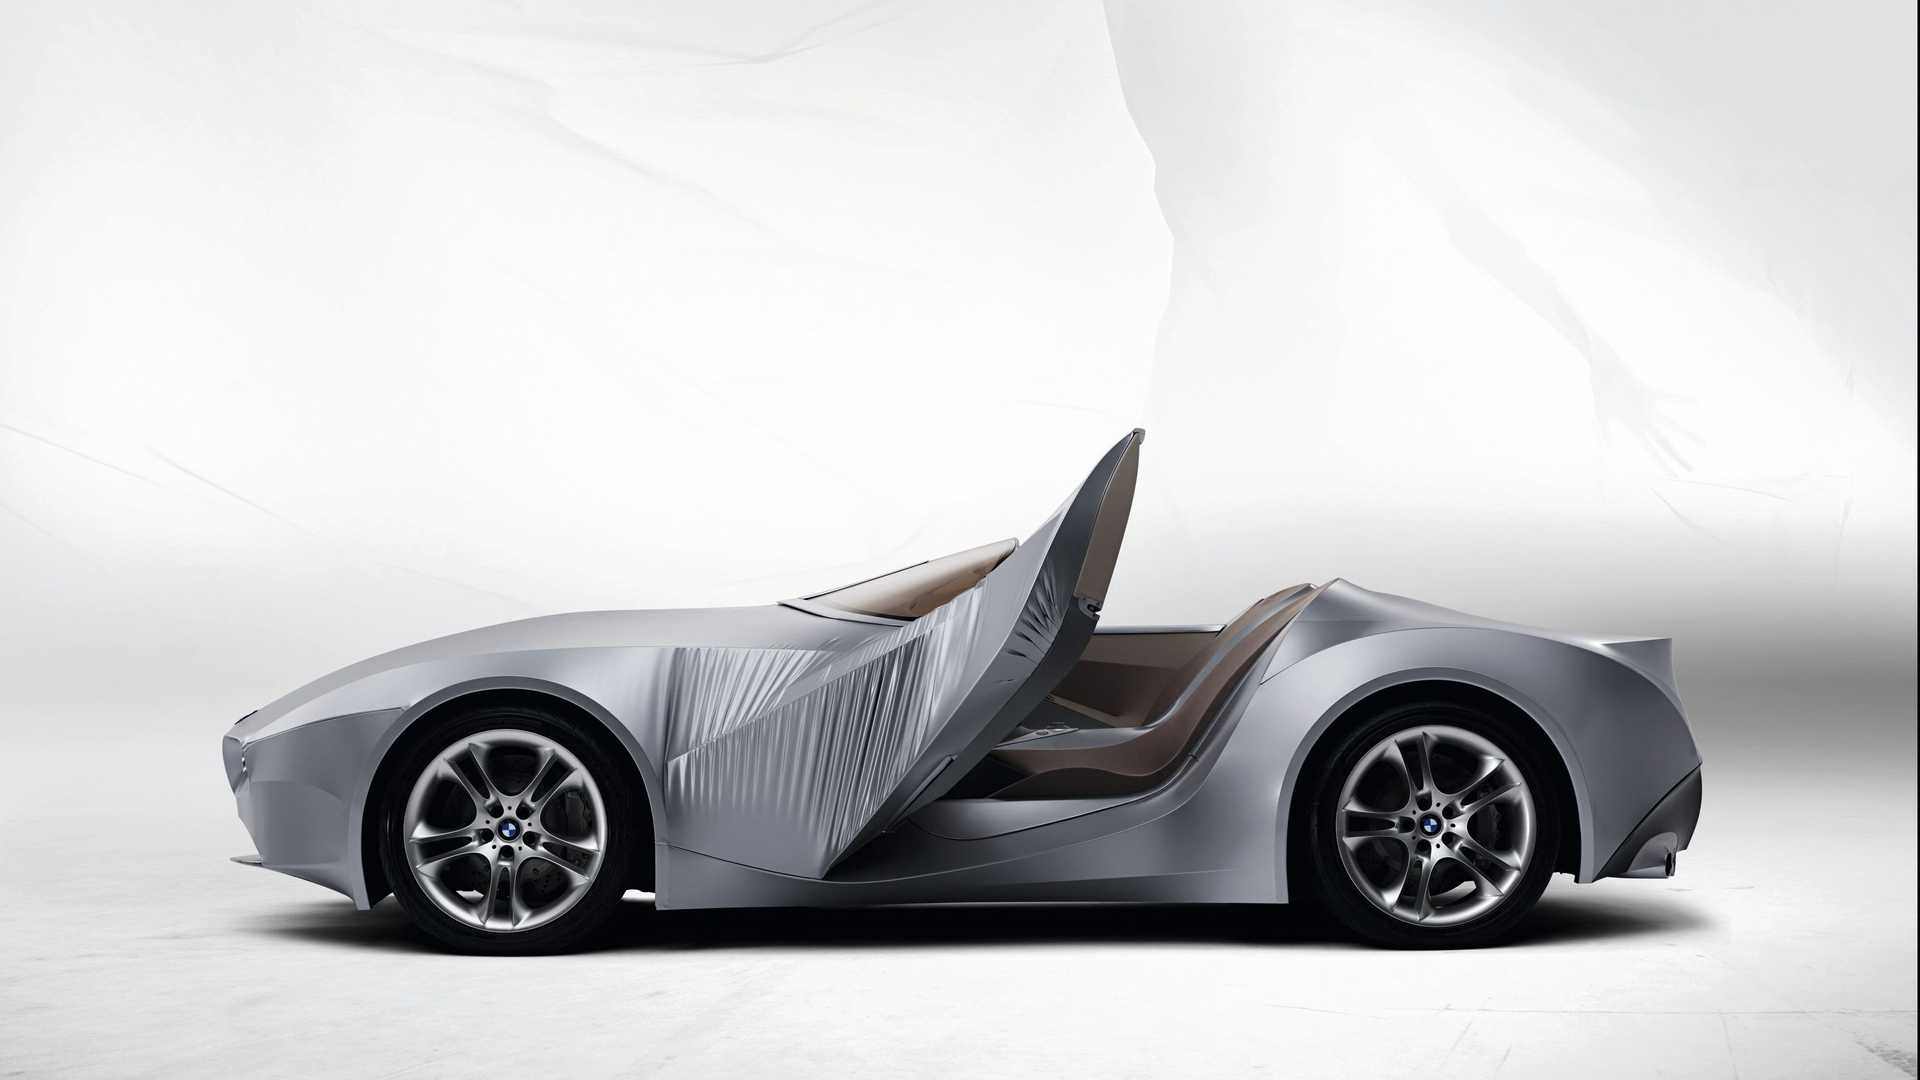 نمای جانبی خودروی مفهومی روباز بی ام و گینا / BMW GINA concept convertible با بدنه پارچه ای